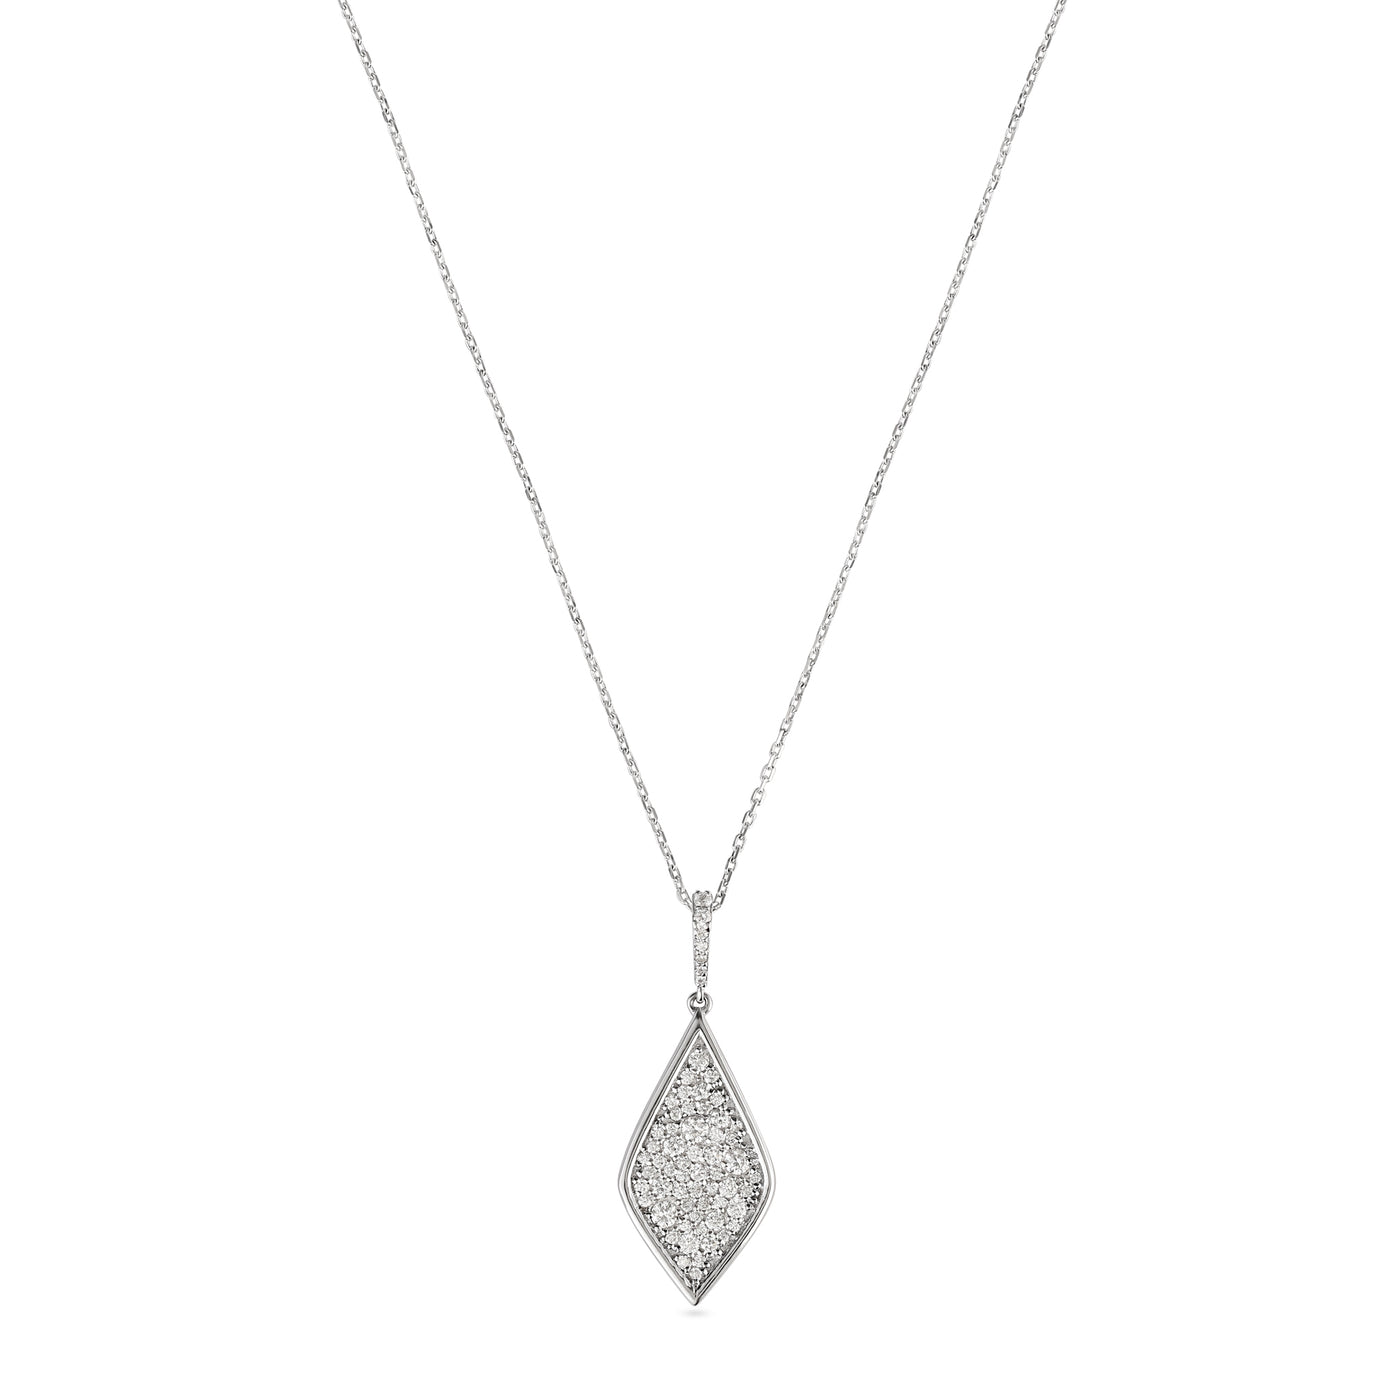 Soit Belle White Gold Kite Diamond Pendant: Modern Elegance